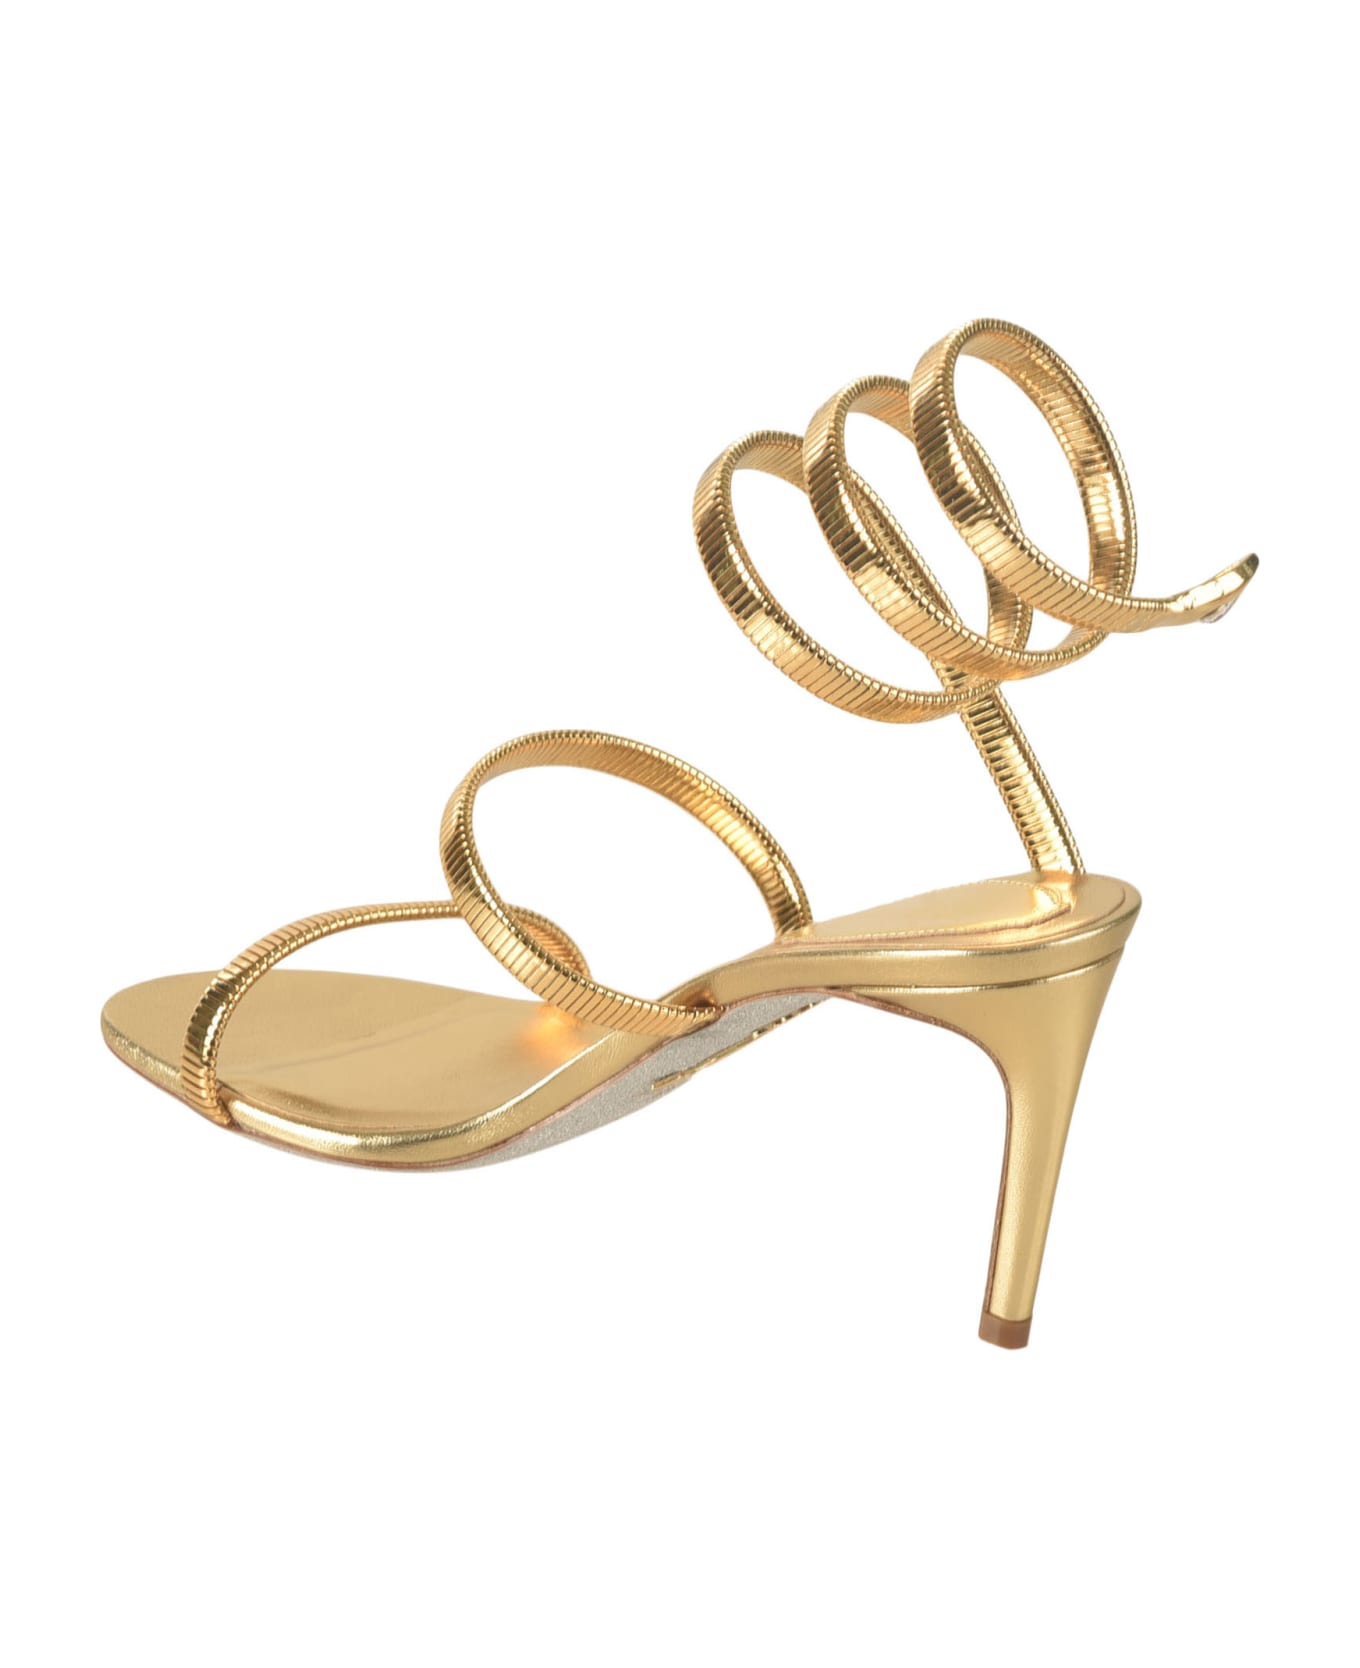 René Caovilla Metallic Twisted Strap Sandals - Gold サンダル